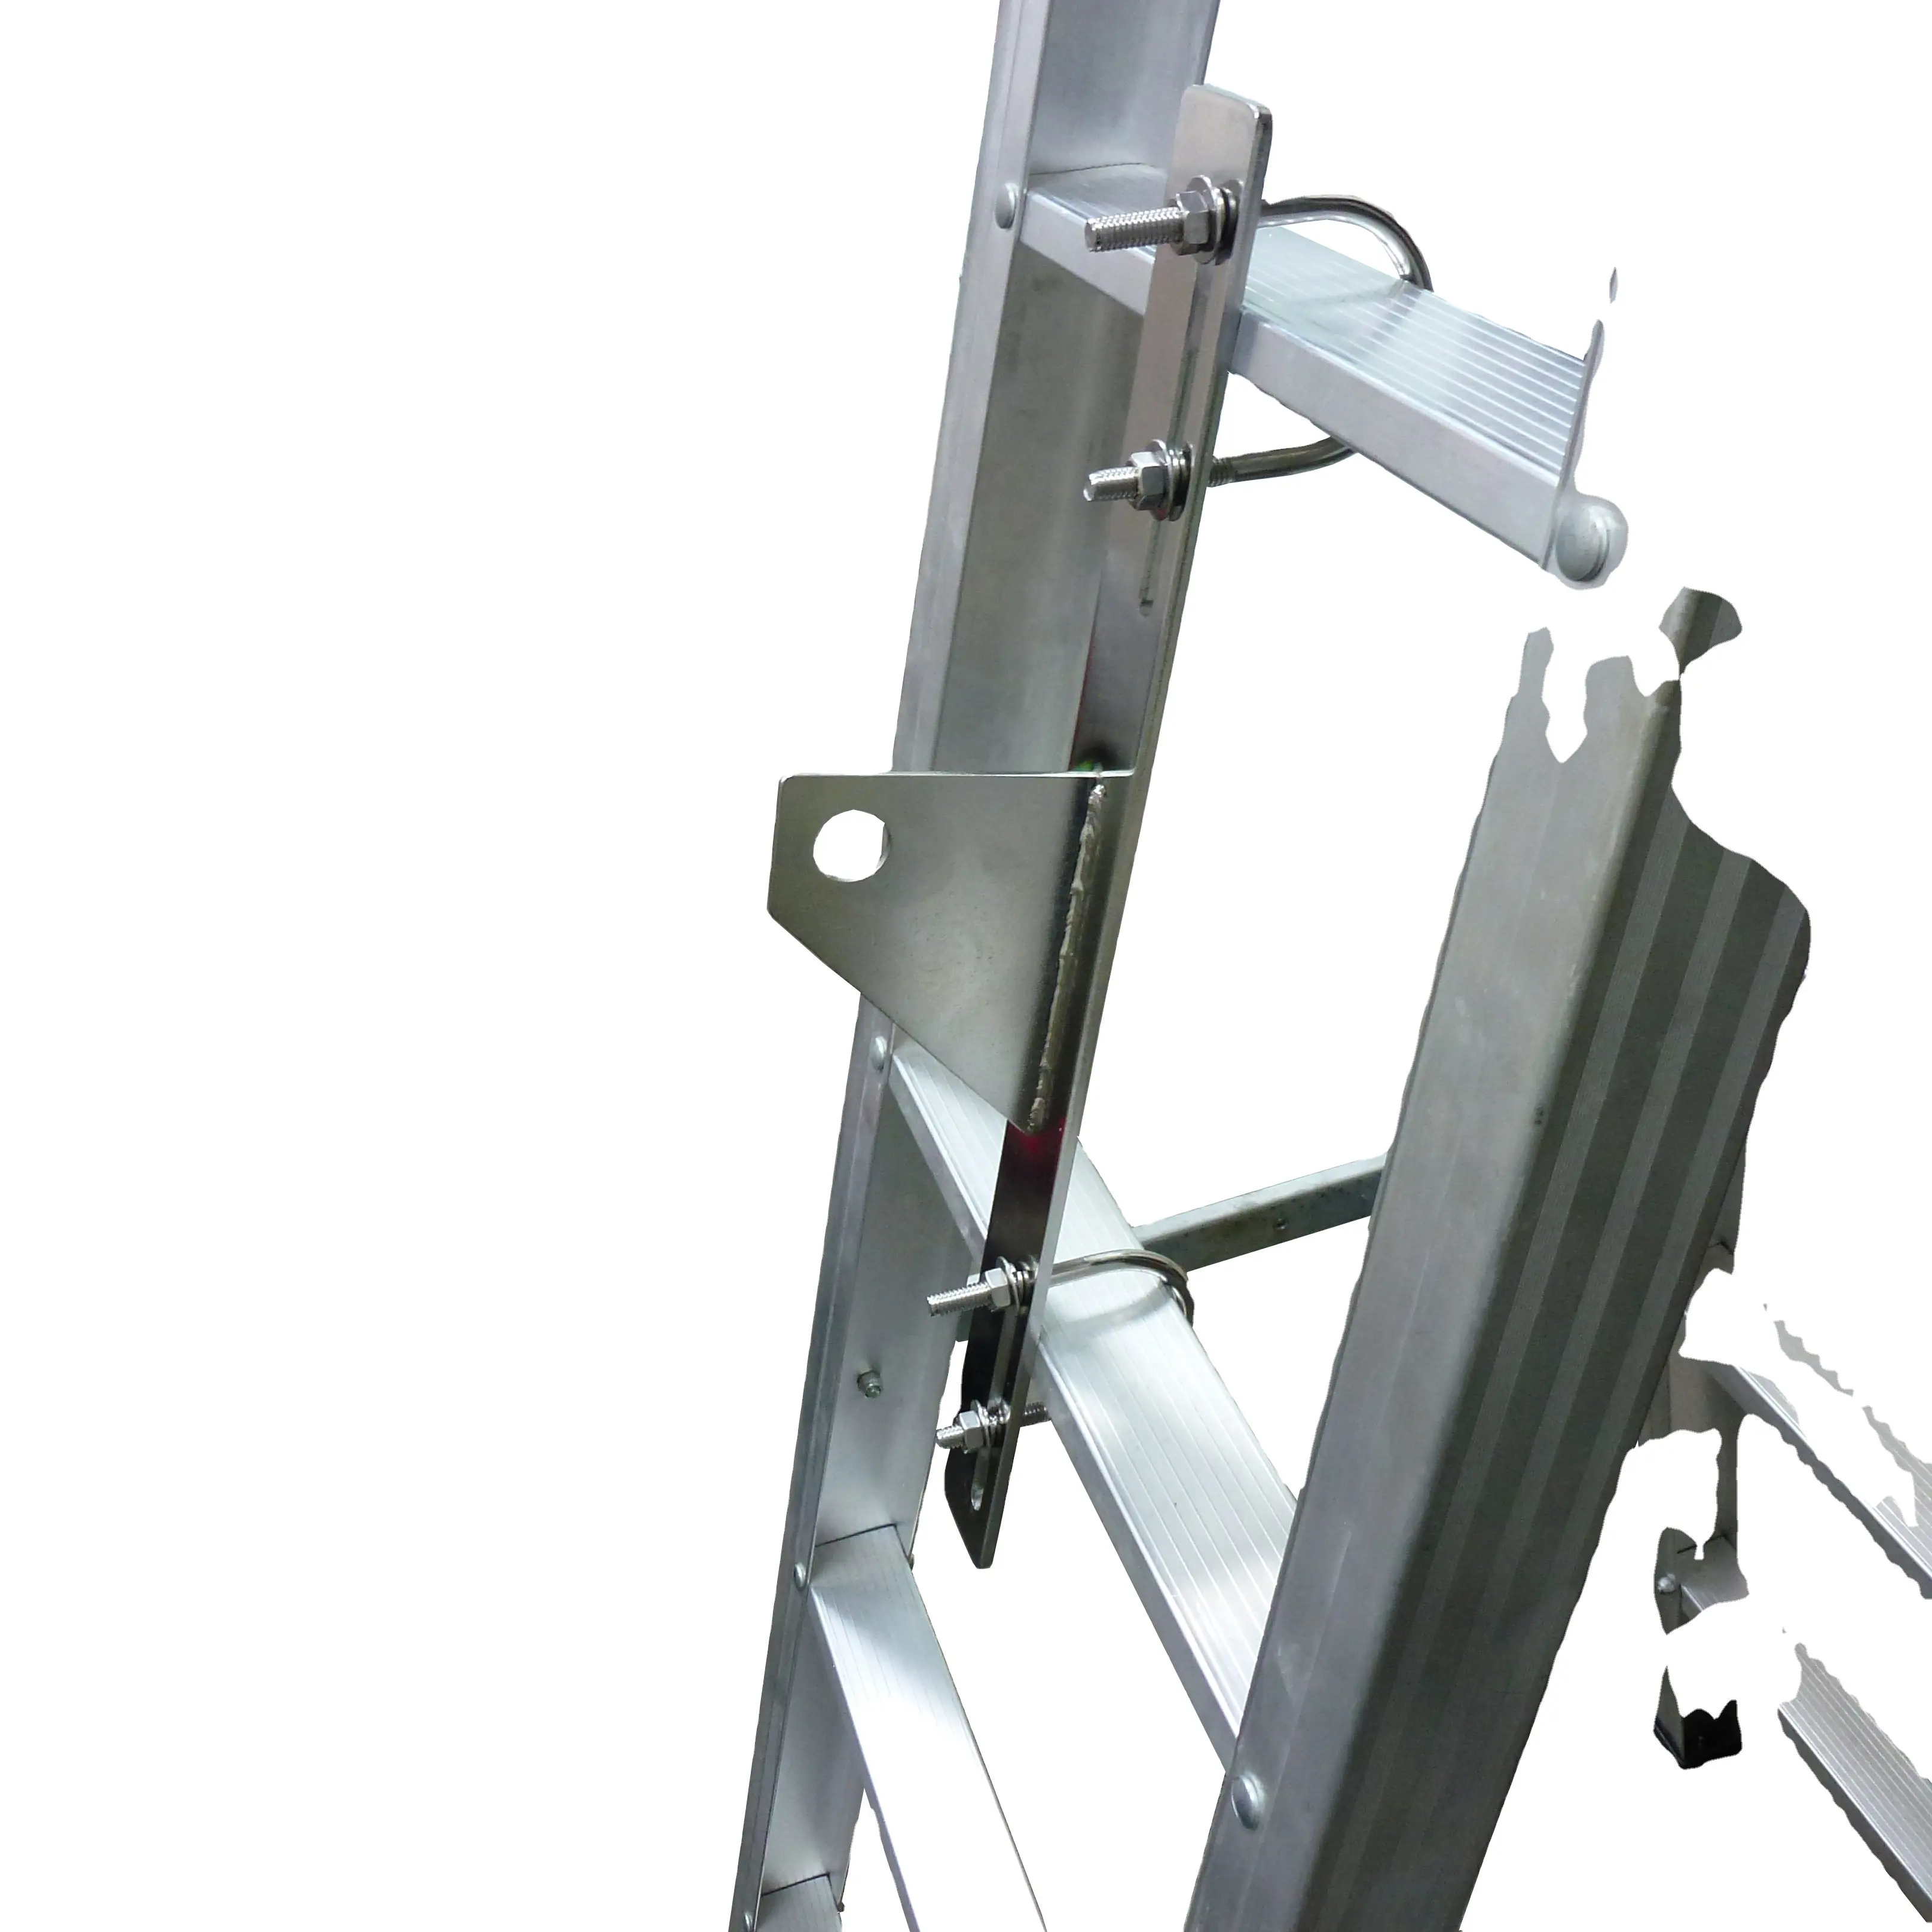 Ponto de ancoragem da extremidade da escada com parafusos em U, sistema de escada vertical, guia de cabo de fio de linha salva-vidas para cabo de 8 mm